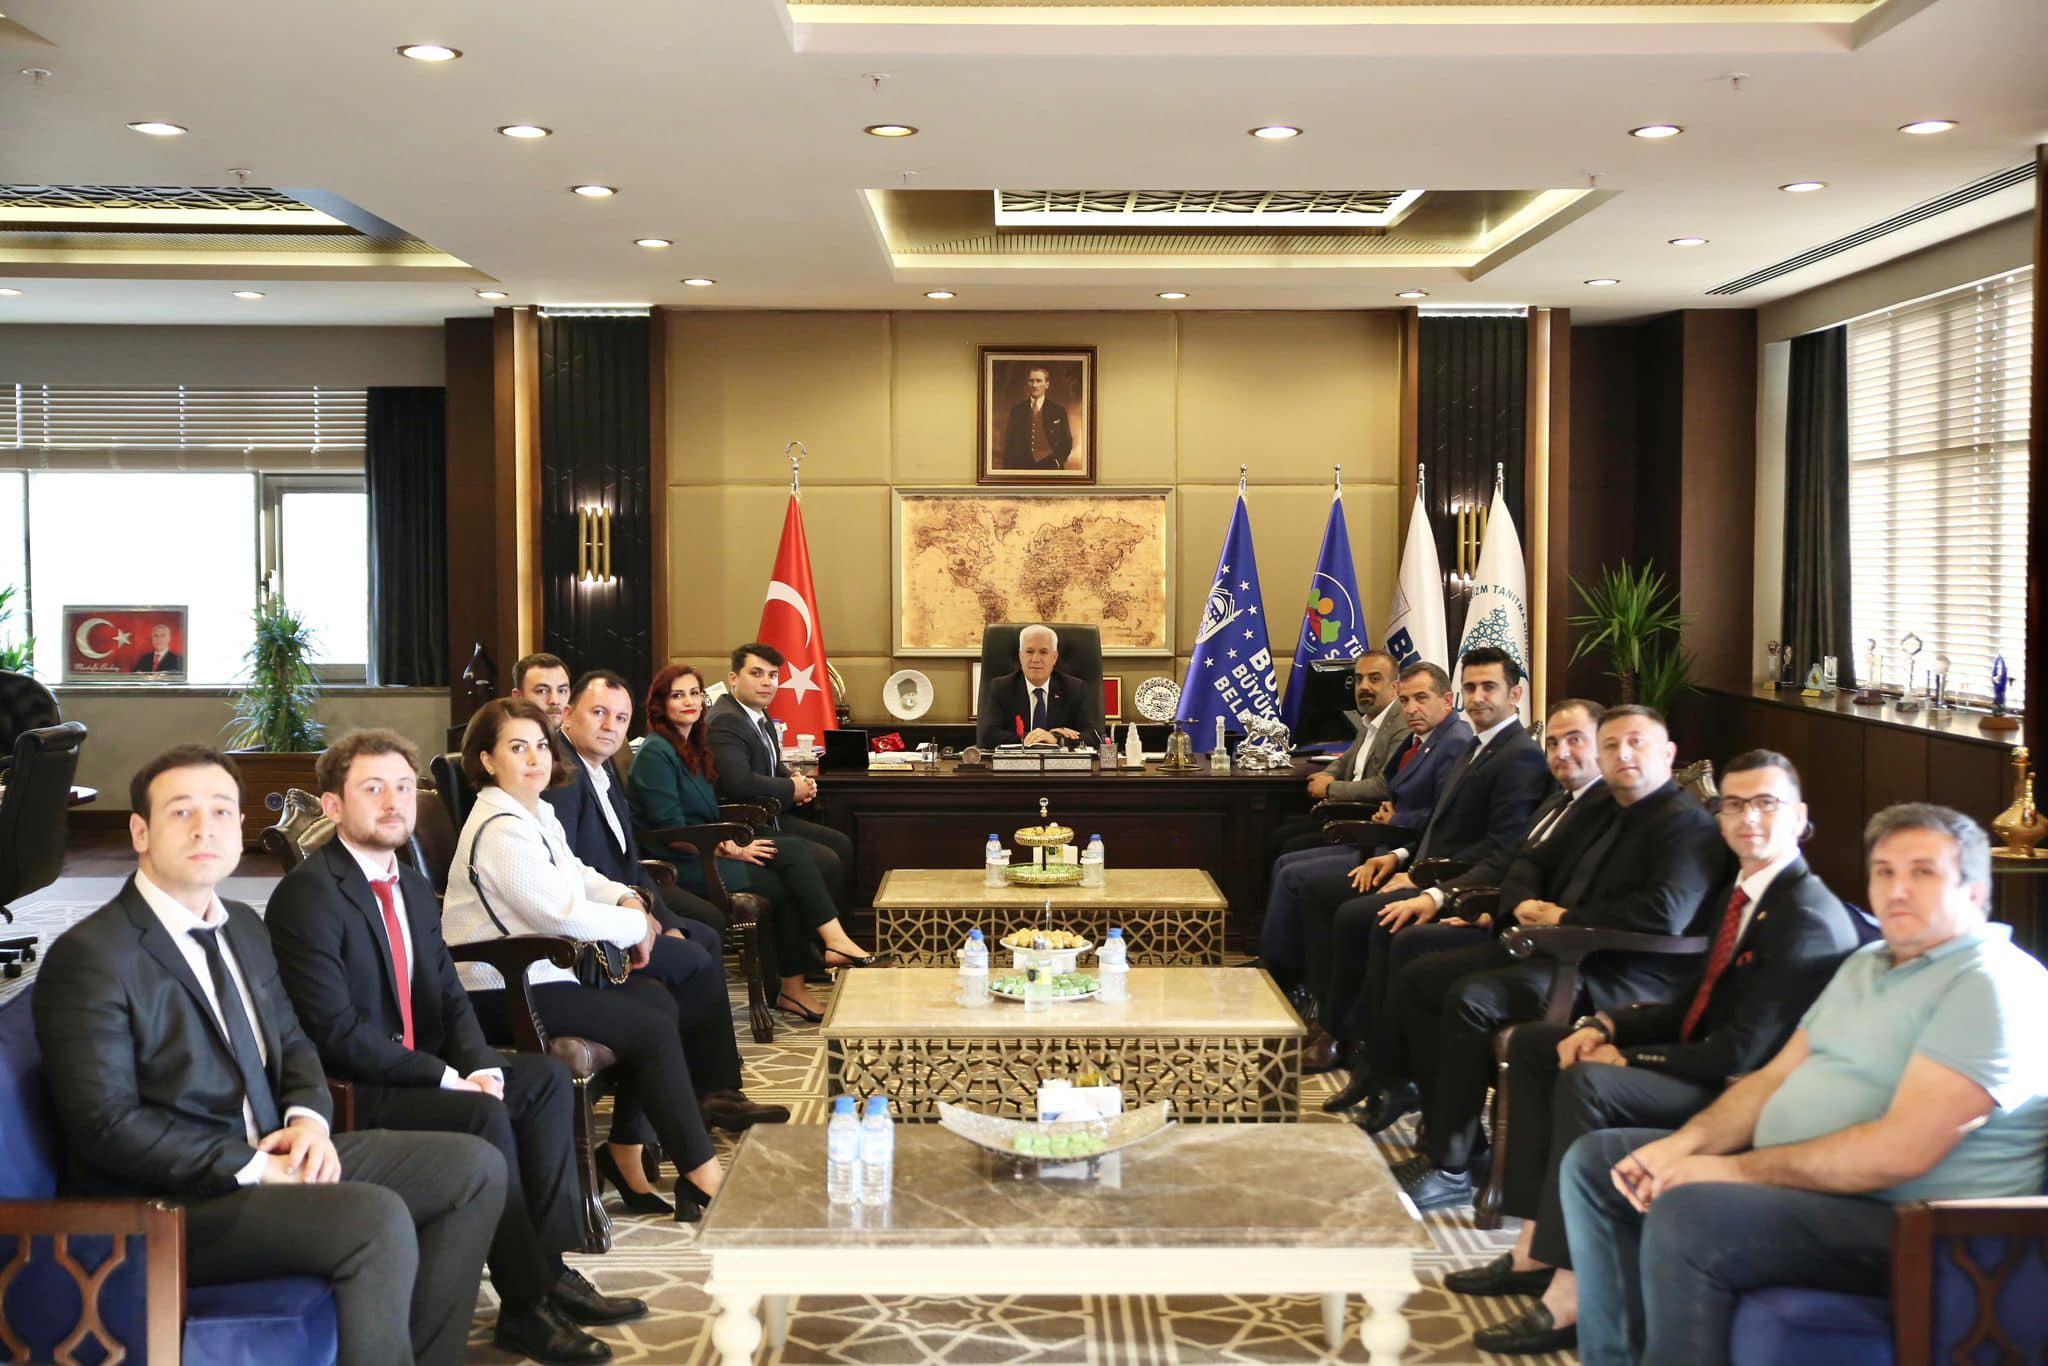 Bursa'da Yerel Kamu Çalışanları ile Büyükşehir Belediye Başkanının Verimli Toplantısı